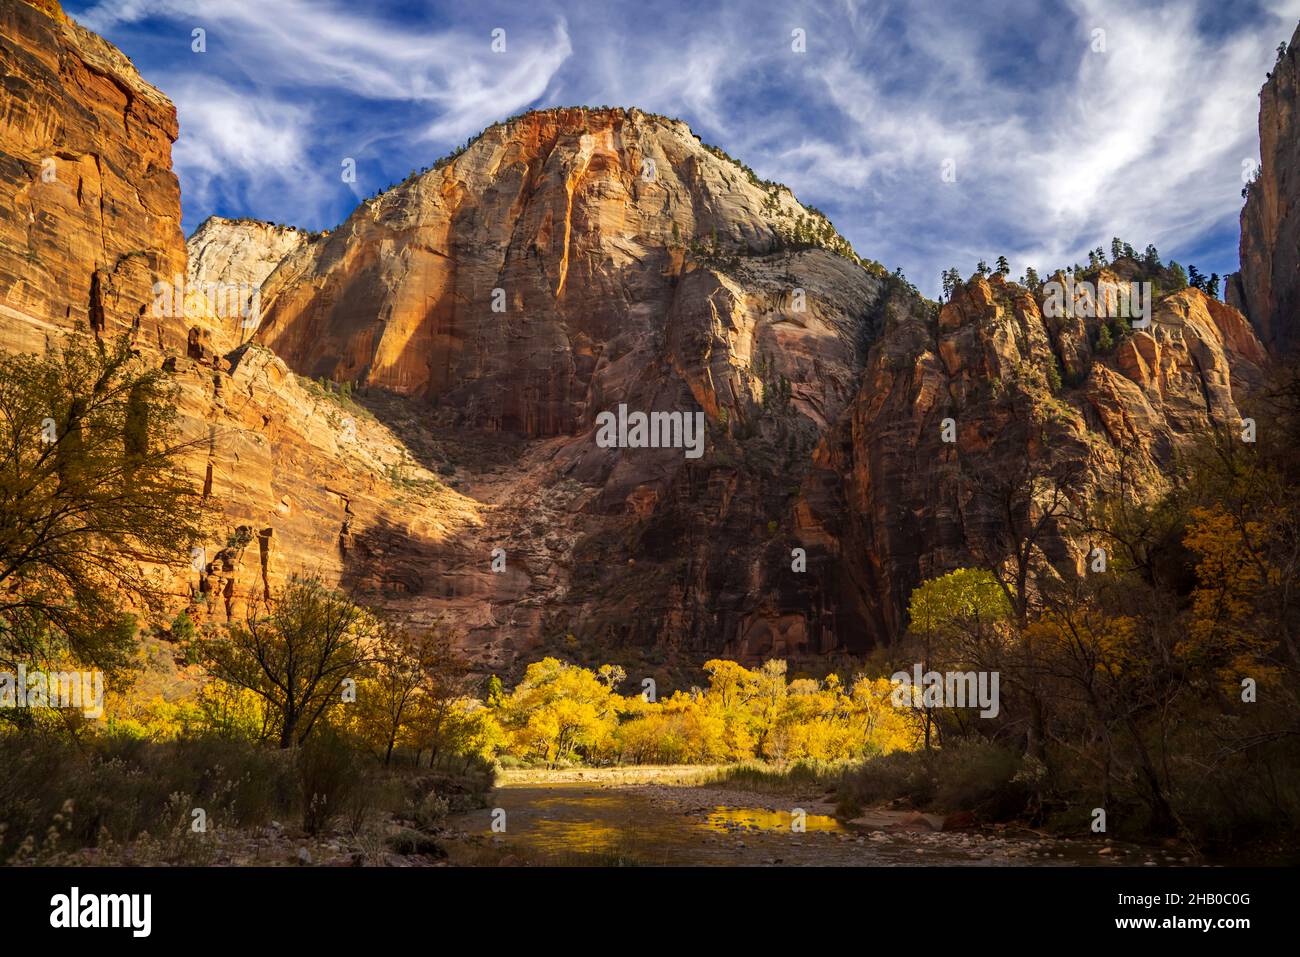 Dies ist eine Herbstansicht des Cable Mountain in der Big Bend Gegend des Zion National Park, Springdale, Washington County, Utah, USA. Stockfoto